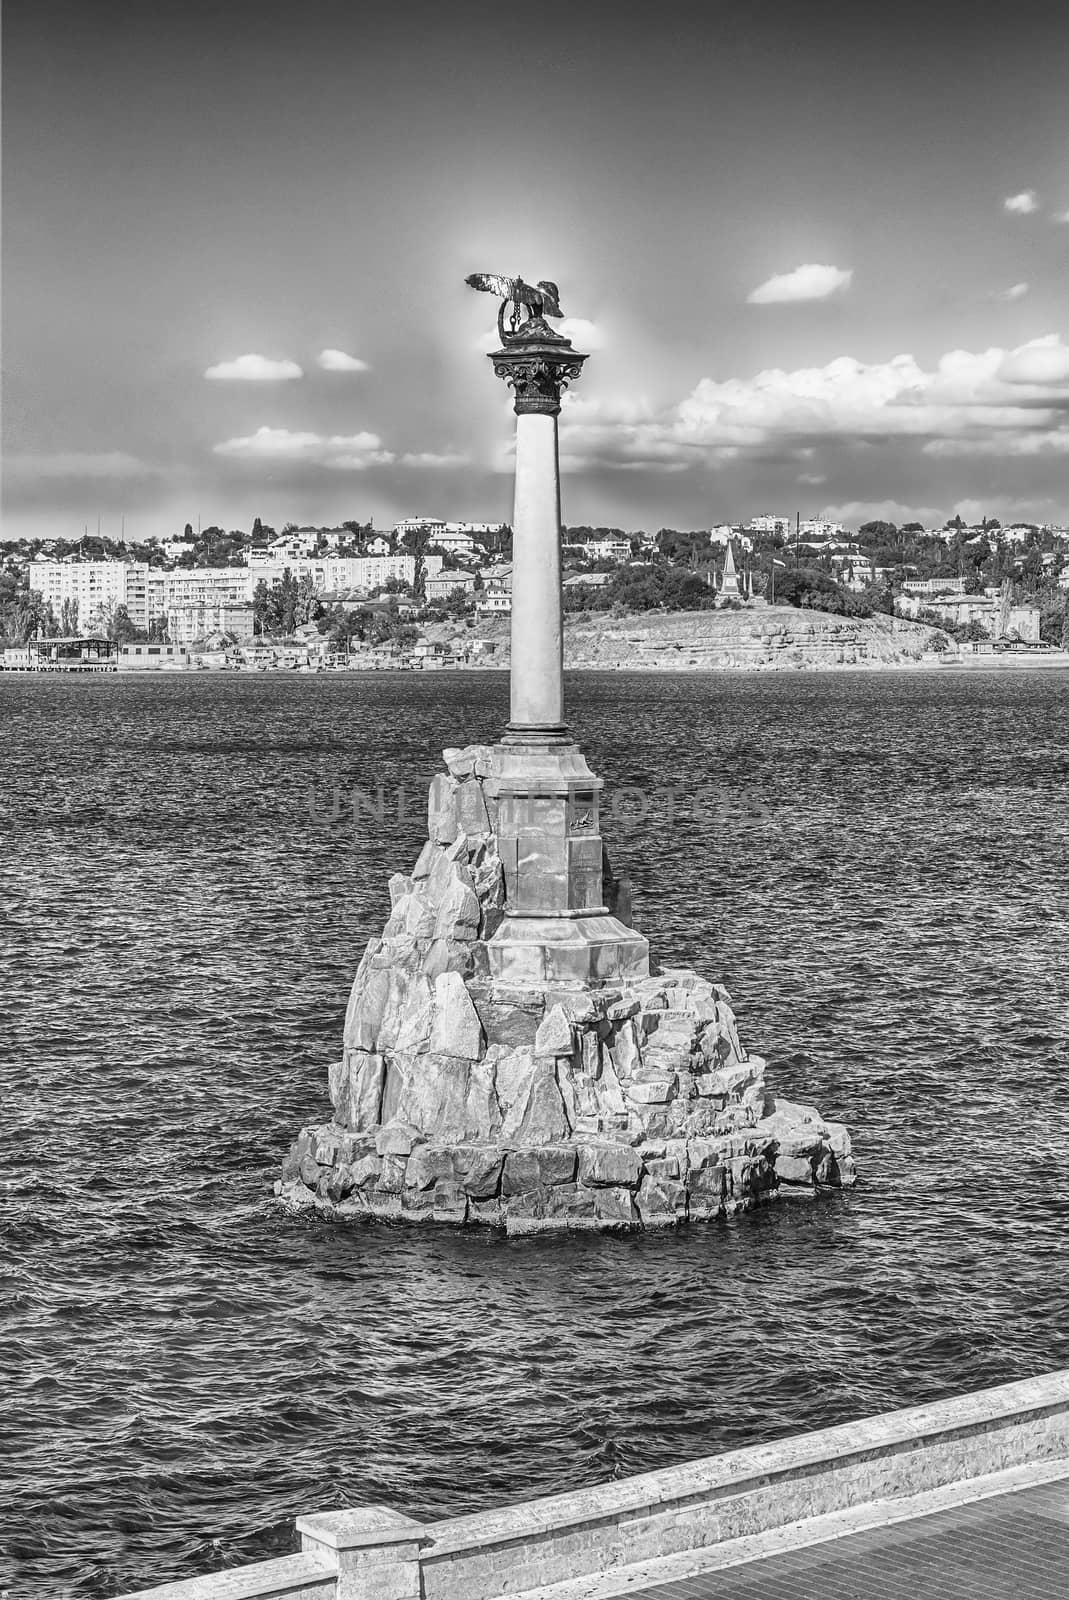 Sunken ships memorial, iconic monument and landmark in Sevastopol, Crimea